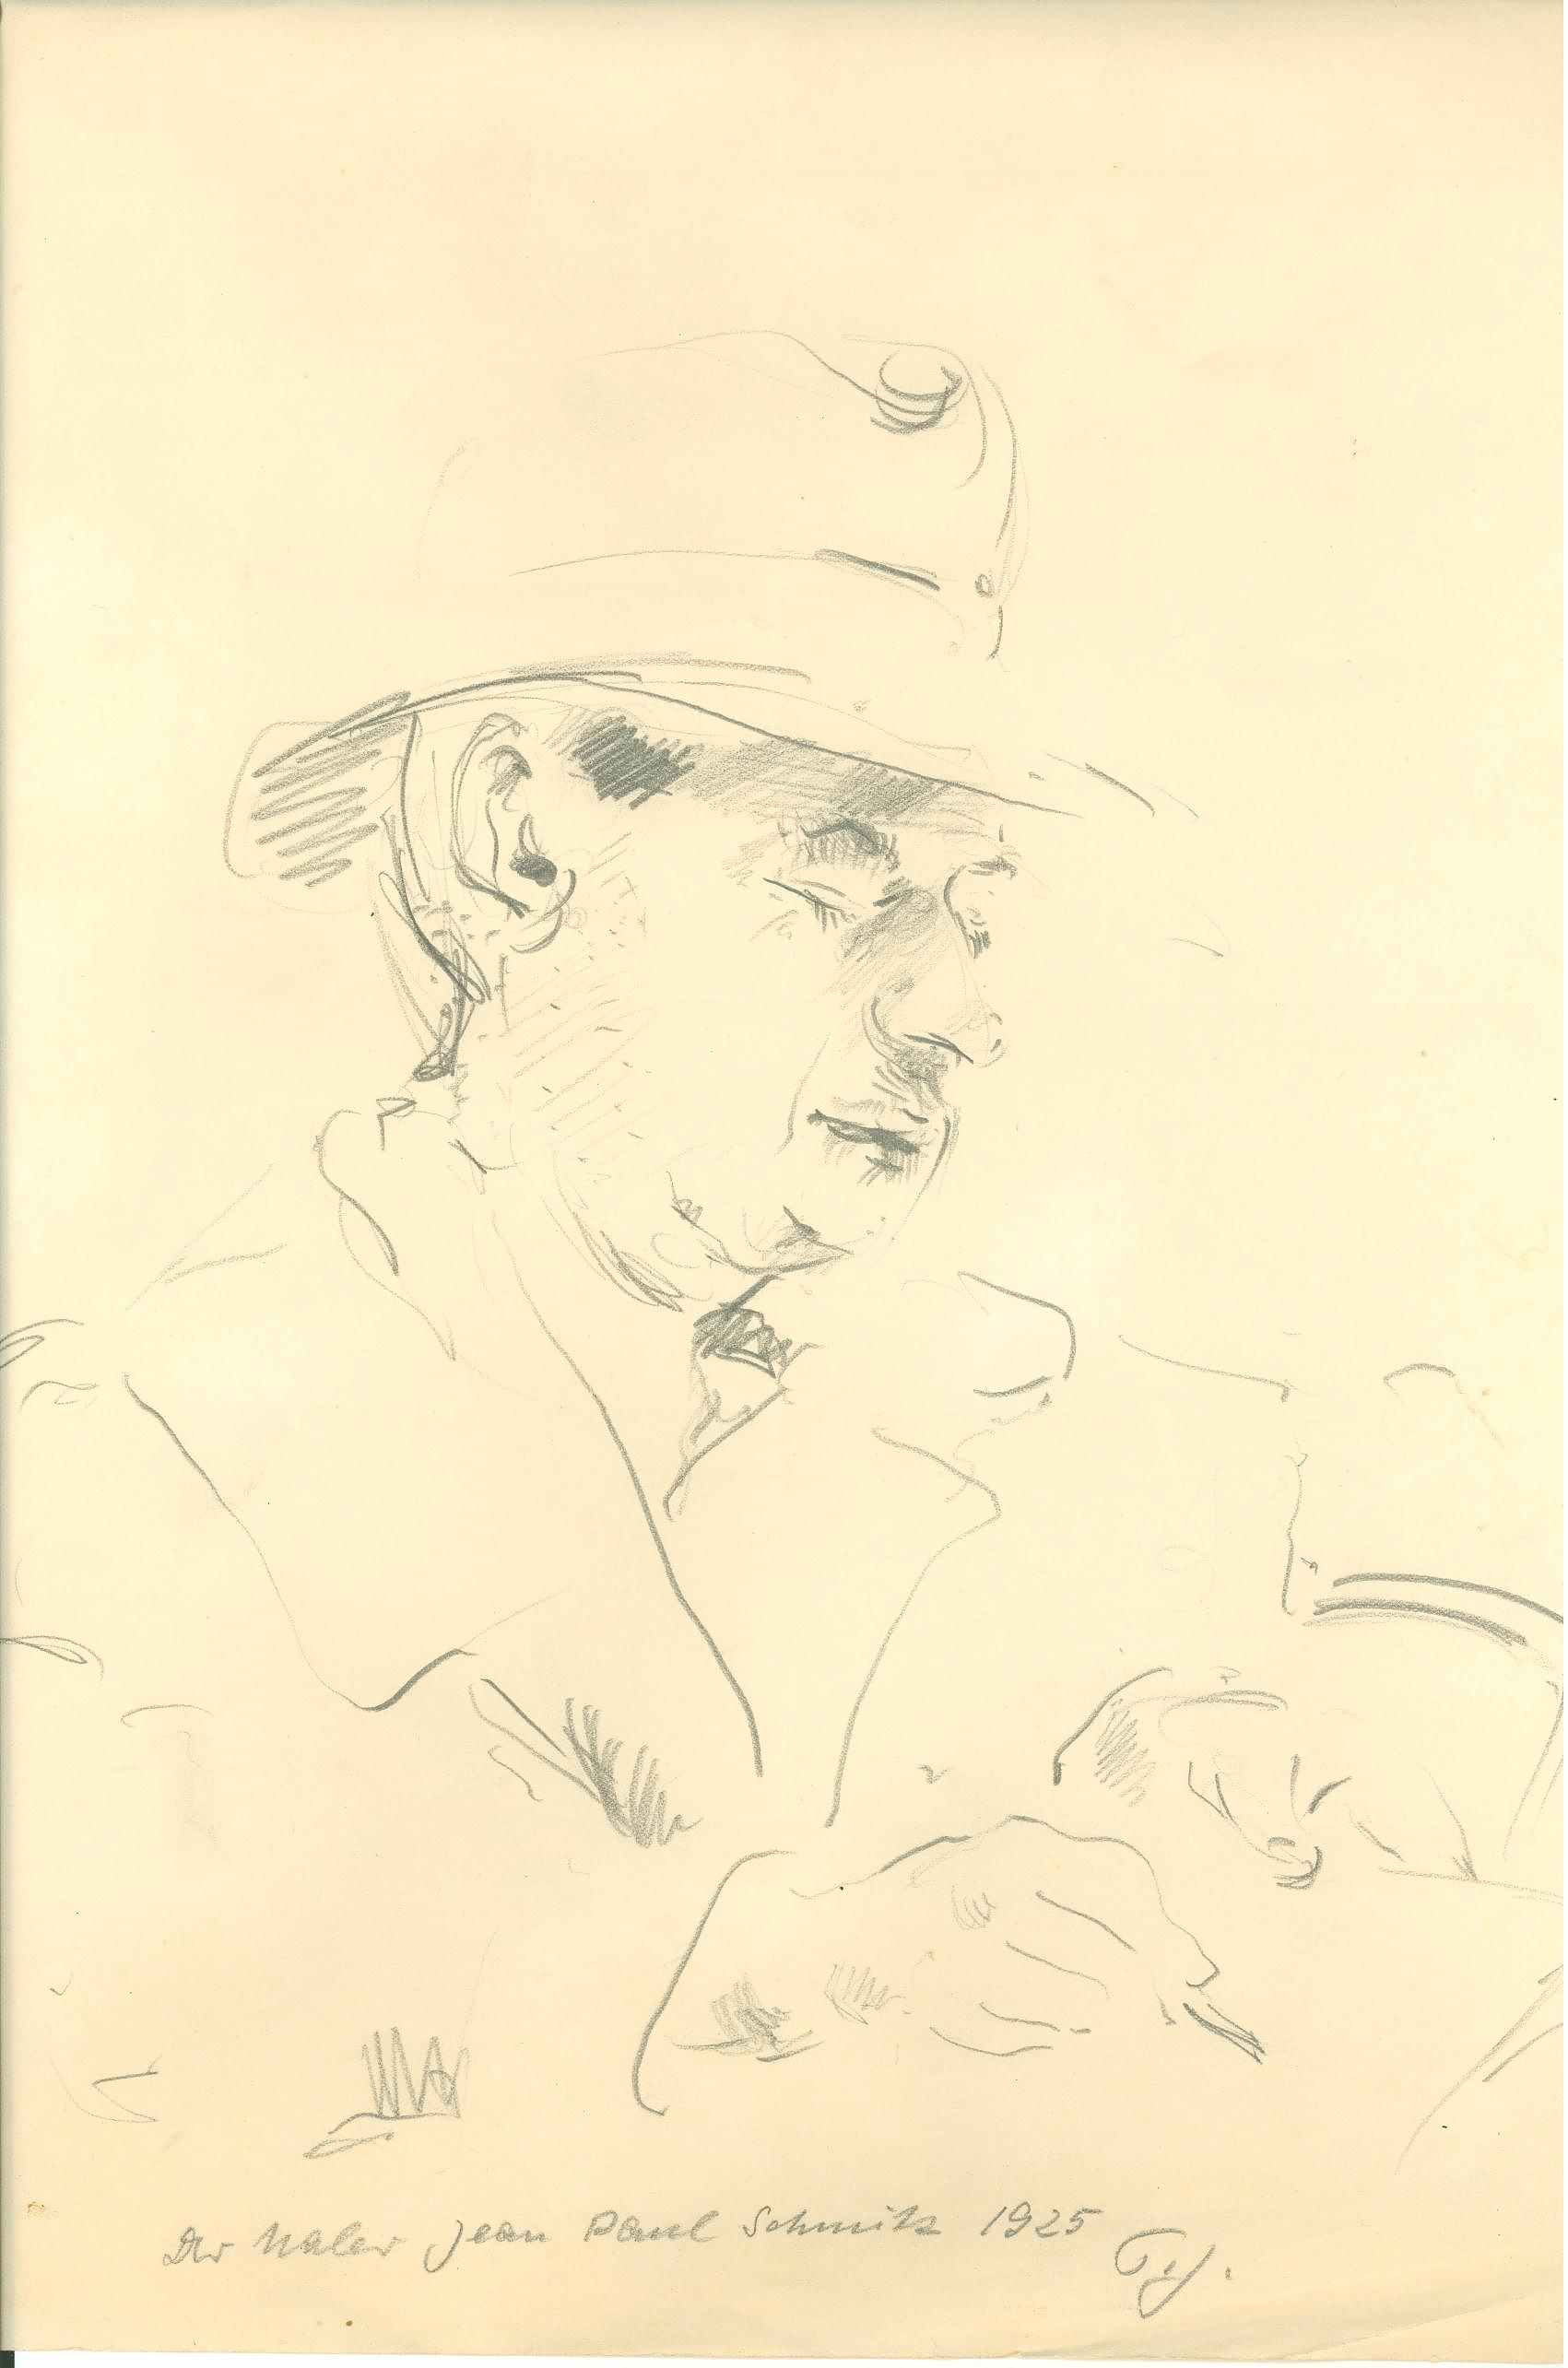 Der Maler Jean Paul Schmitz, 1925, Zeichnung von Peter Janssen.